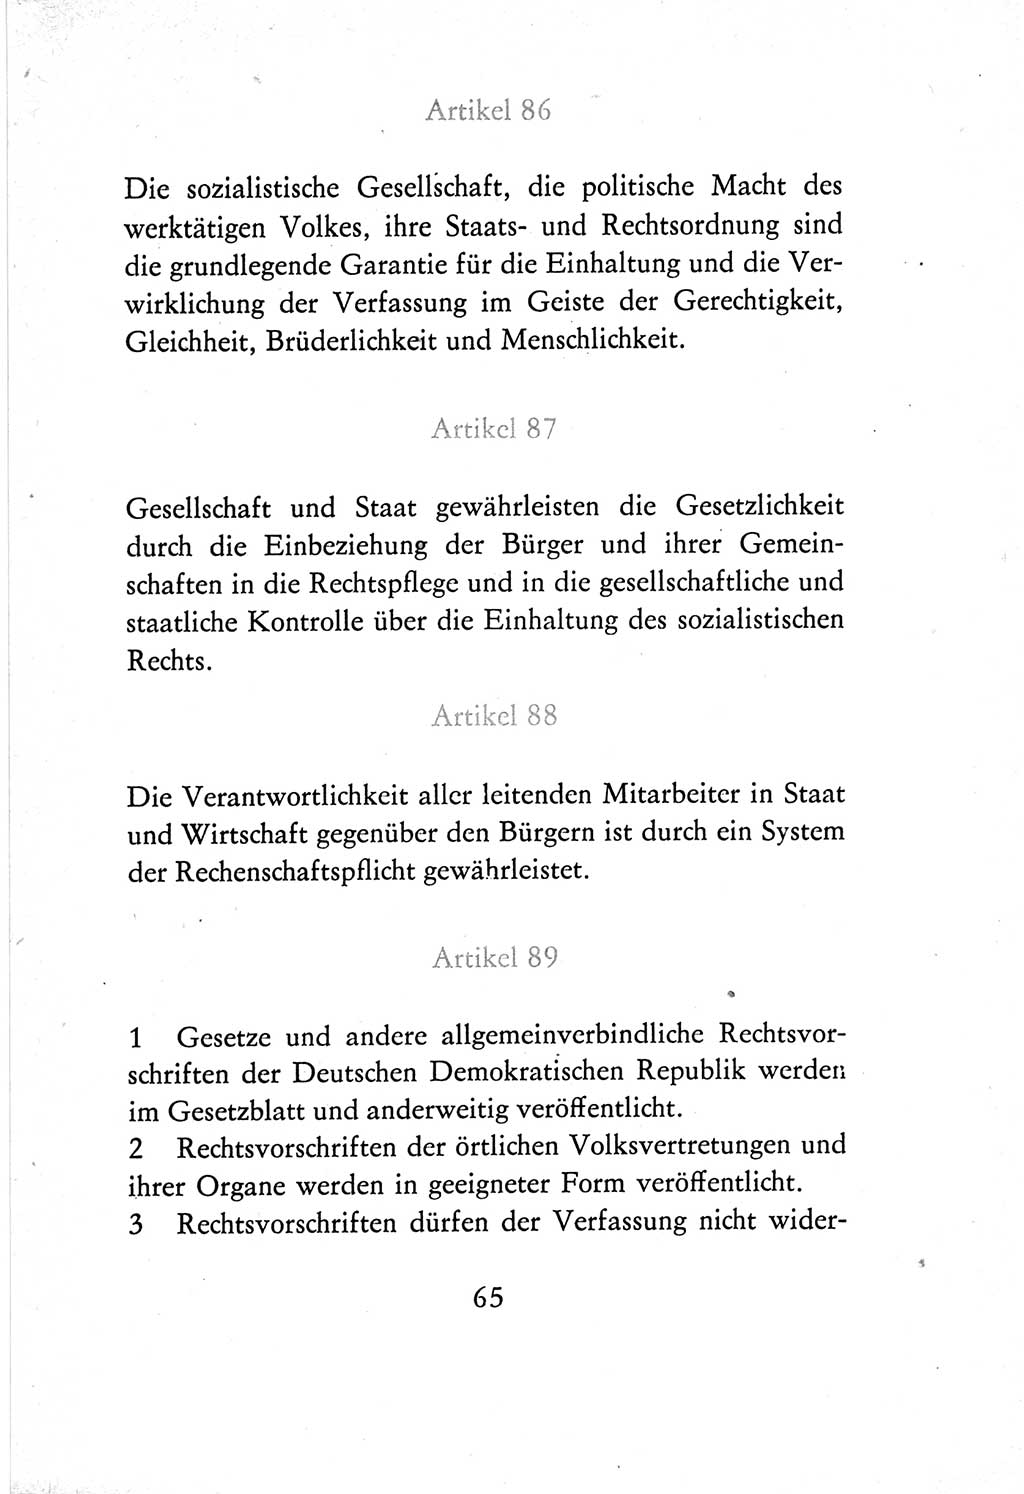 Verfassung der Deutschen Demokratischen Republik (DDR) vom 7. Oktober 1974, Seite 65 (Verf. DDR 1974, S. 65)